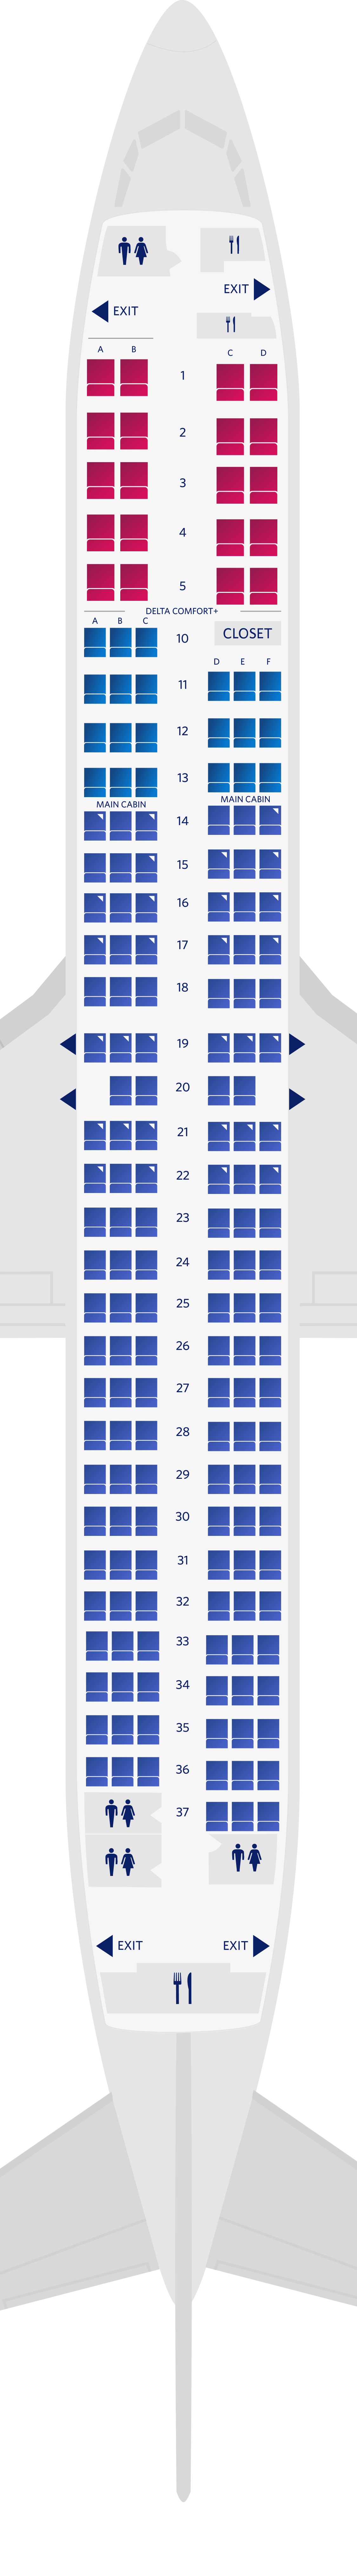 Configuration des sièges du Boeing 737-900-739